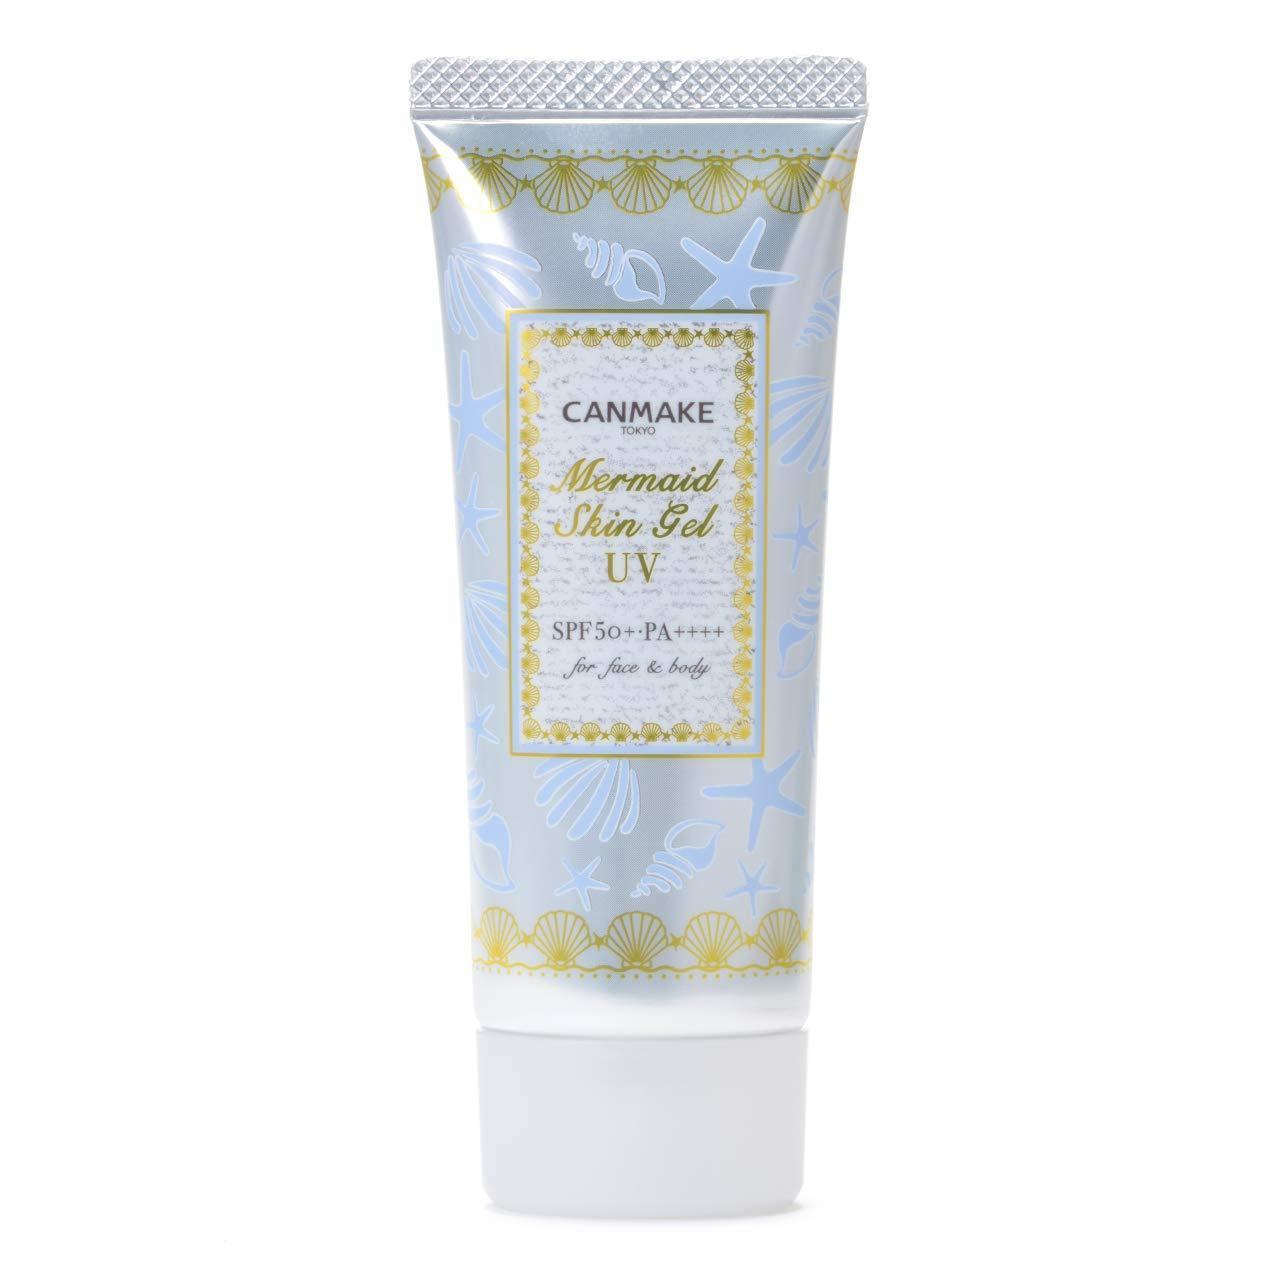 Canmake Mermaid Skin Gel UV White 02 SPF50+ PA++++ 40g - YOYO JAPAN